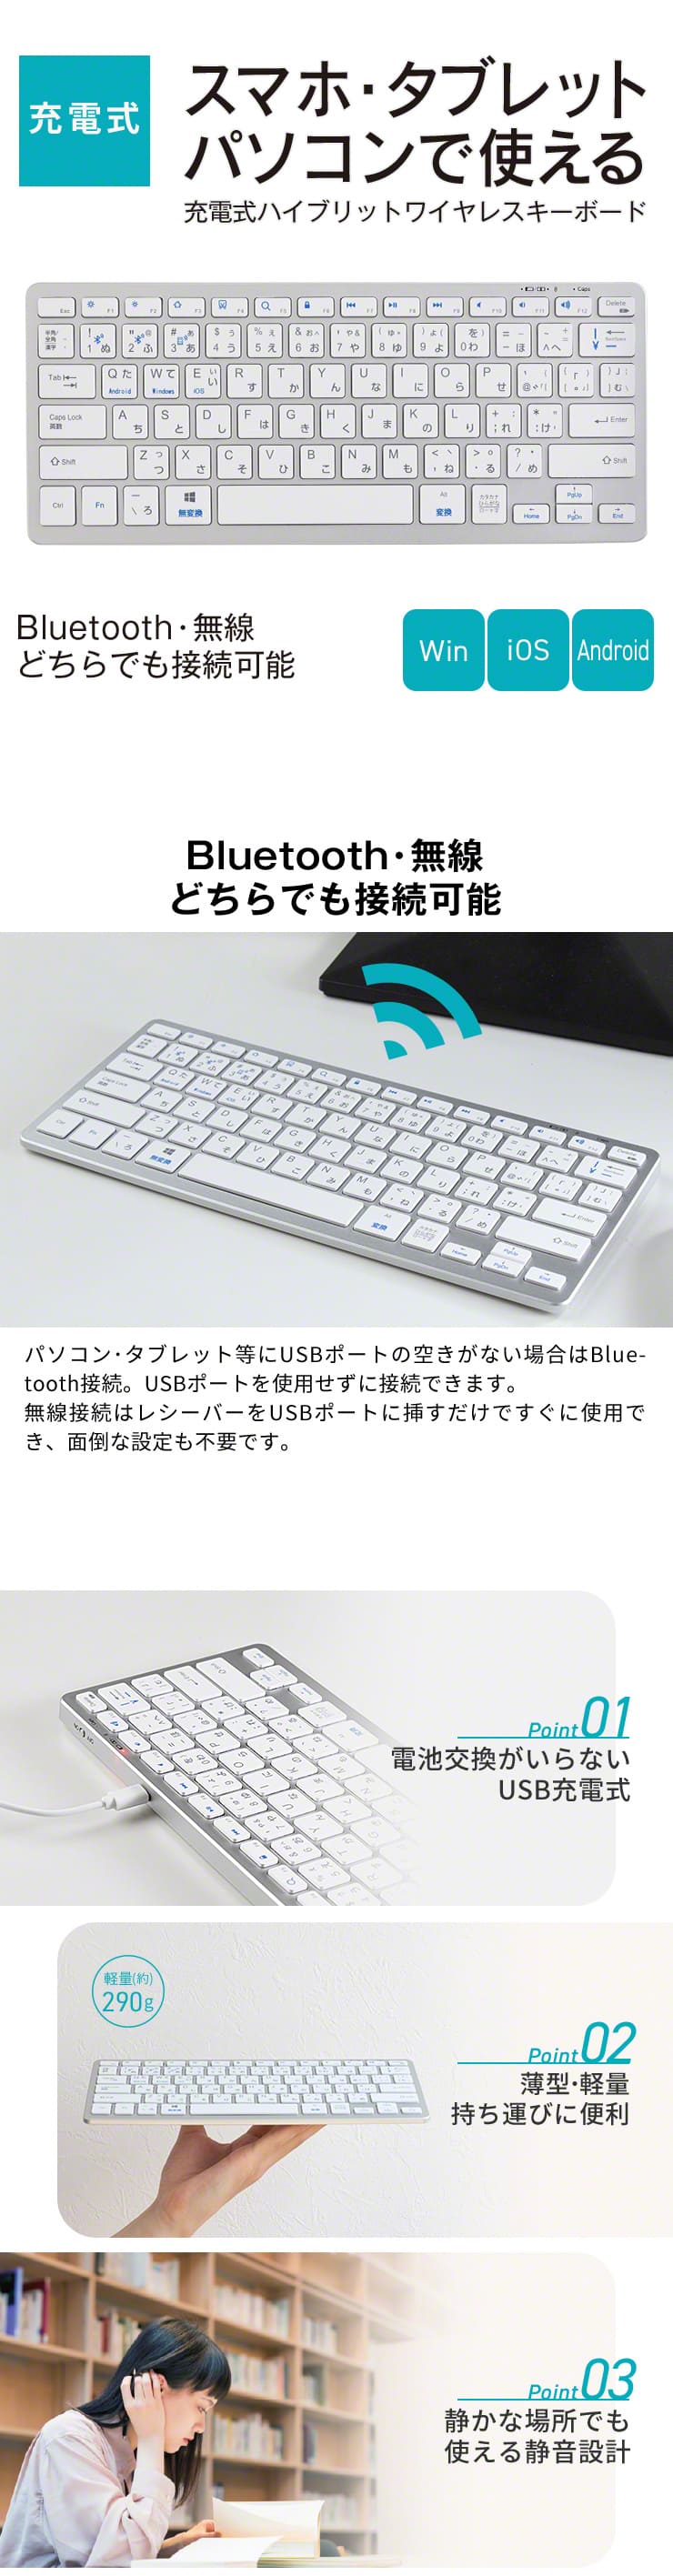 スマホ タブレット パソコン キーボード 充電式 薄型 軽量 静音 Bluetooth 無線